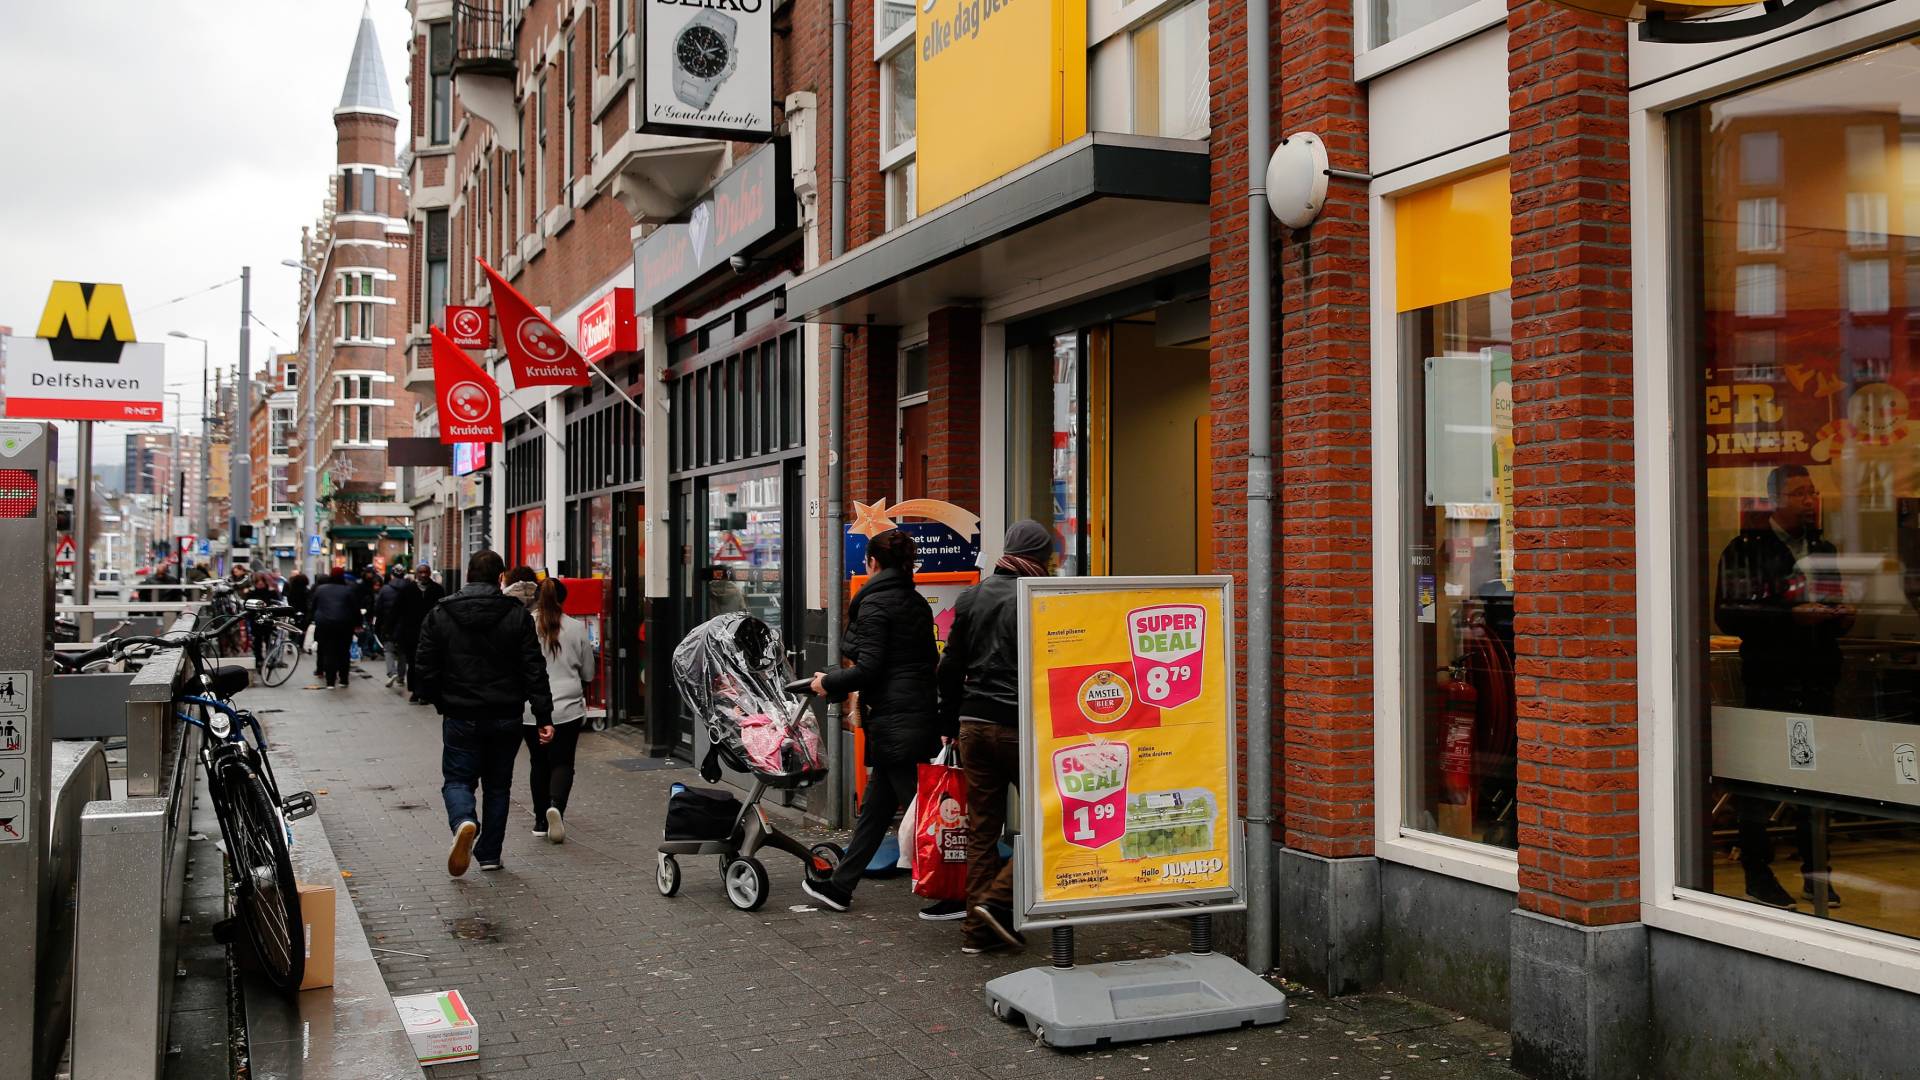 عمال المتاجر الهولندية لا يحصلون على جميع حقوقهم، وFNV تتوقع  إجراءات من قبل موظفي المتجر